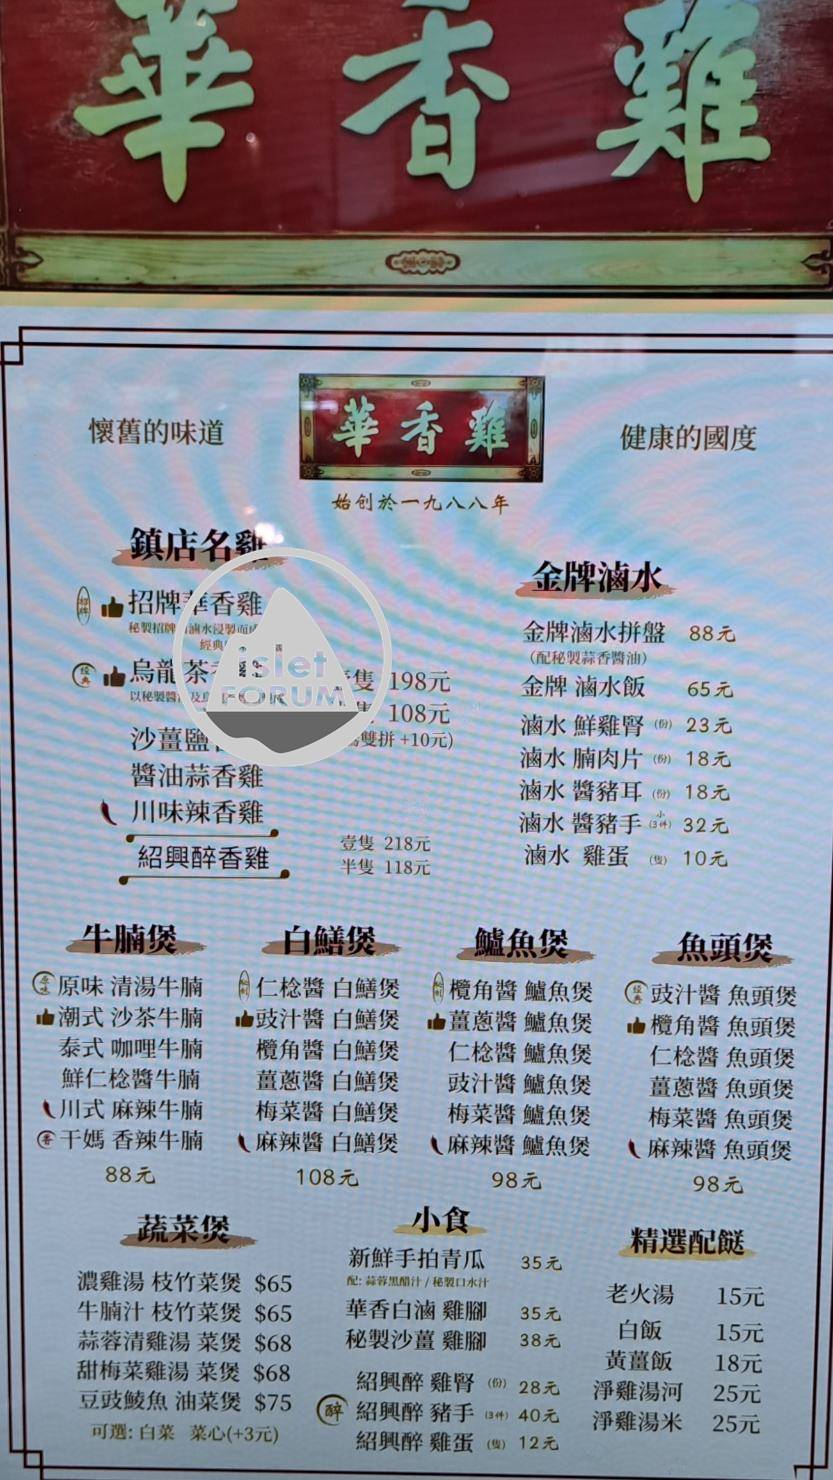 華香雞在香港仍然有三間分店 (6).jpg